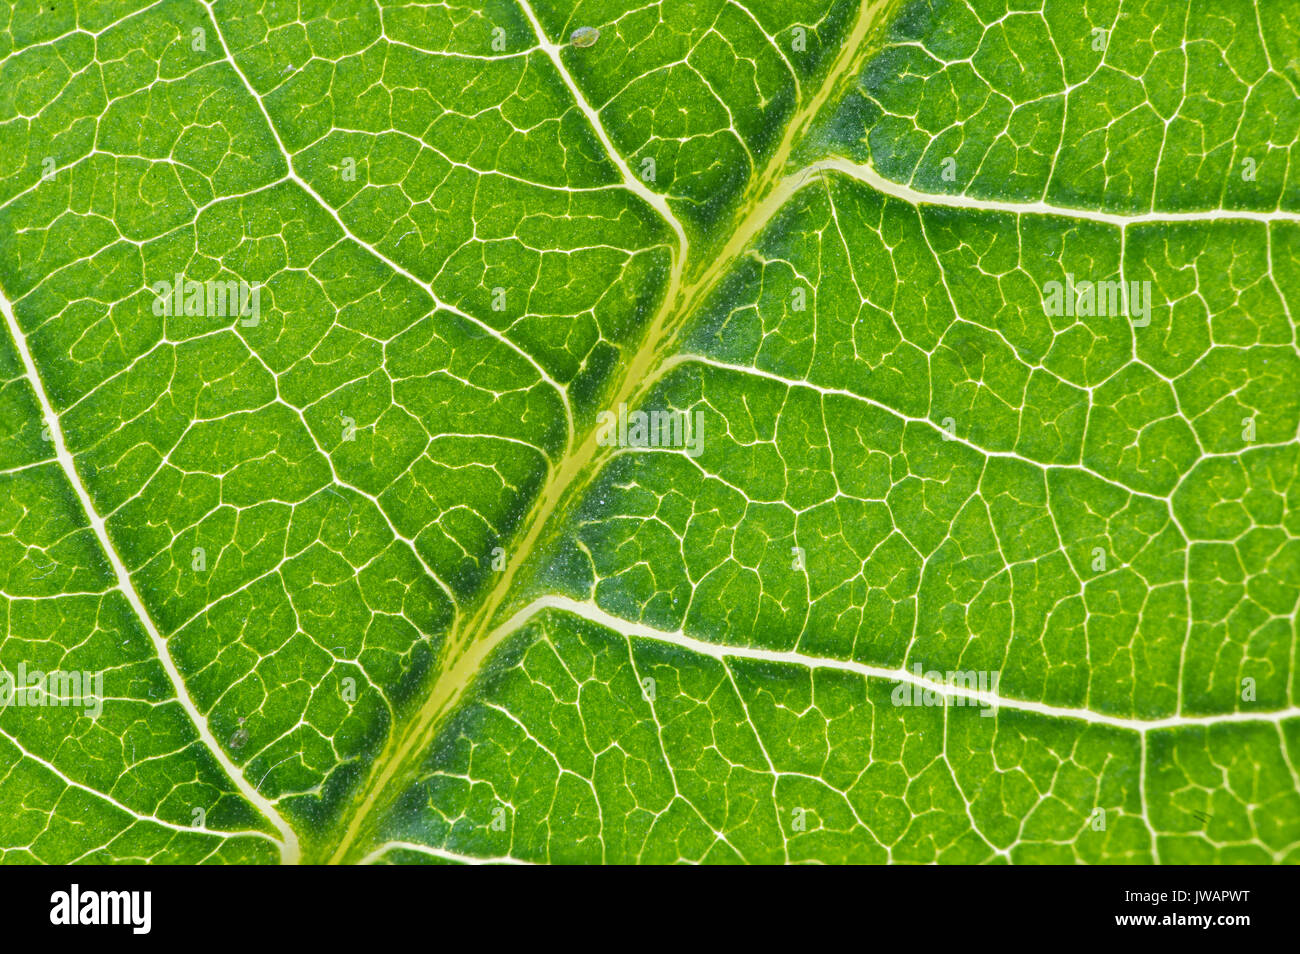 Netzartige Blattaderung eines Blatts der Papaya-Pflanze (Carica papaya) Stock Photo